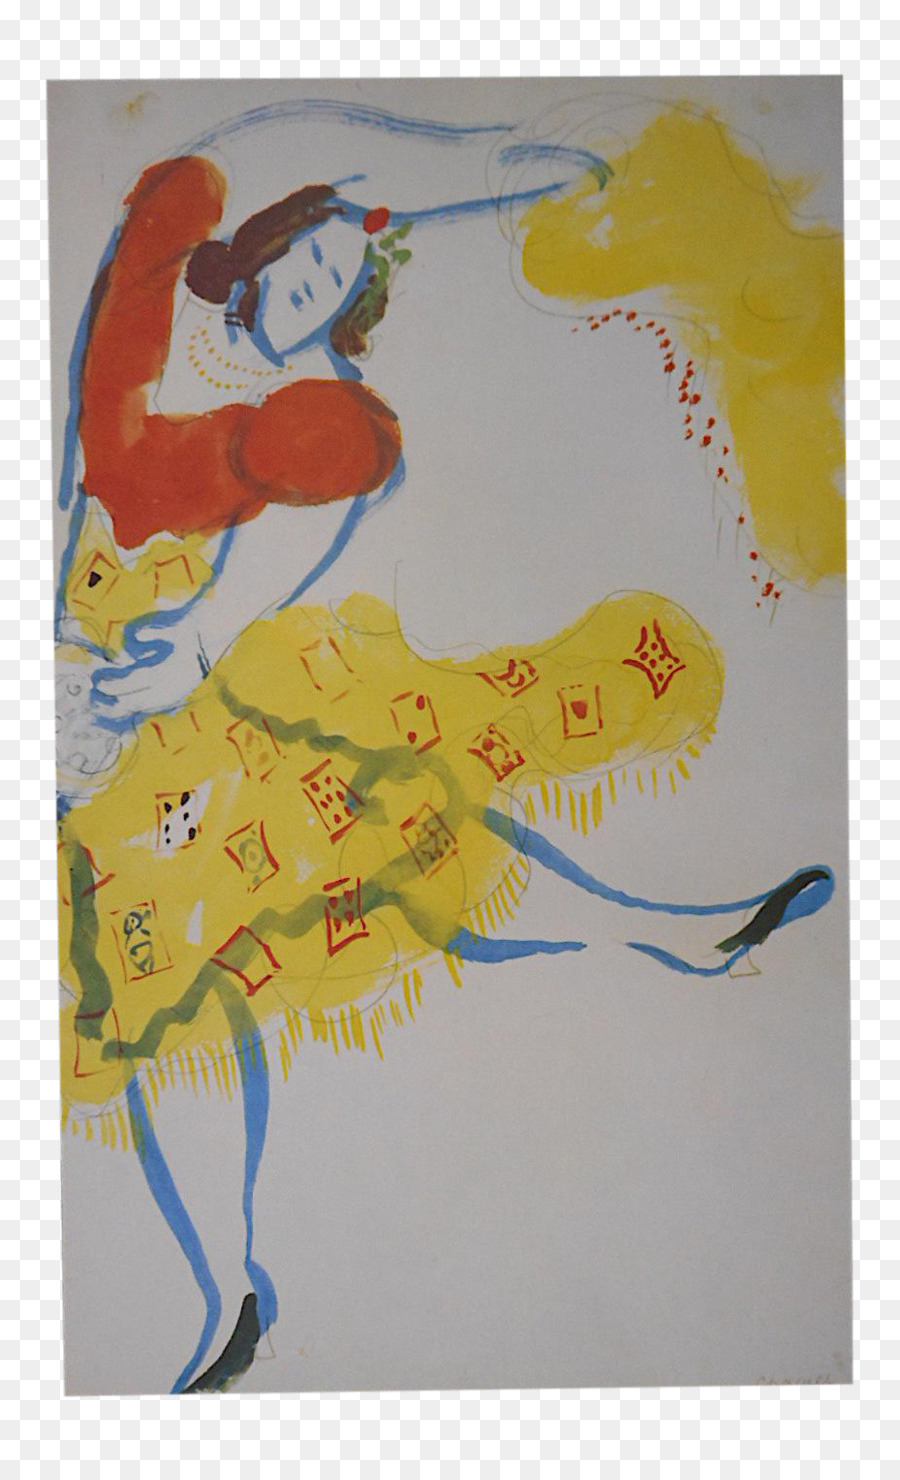 Aquarellmalerei Das Museum of Modern Art Painter - Chagall